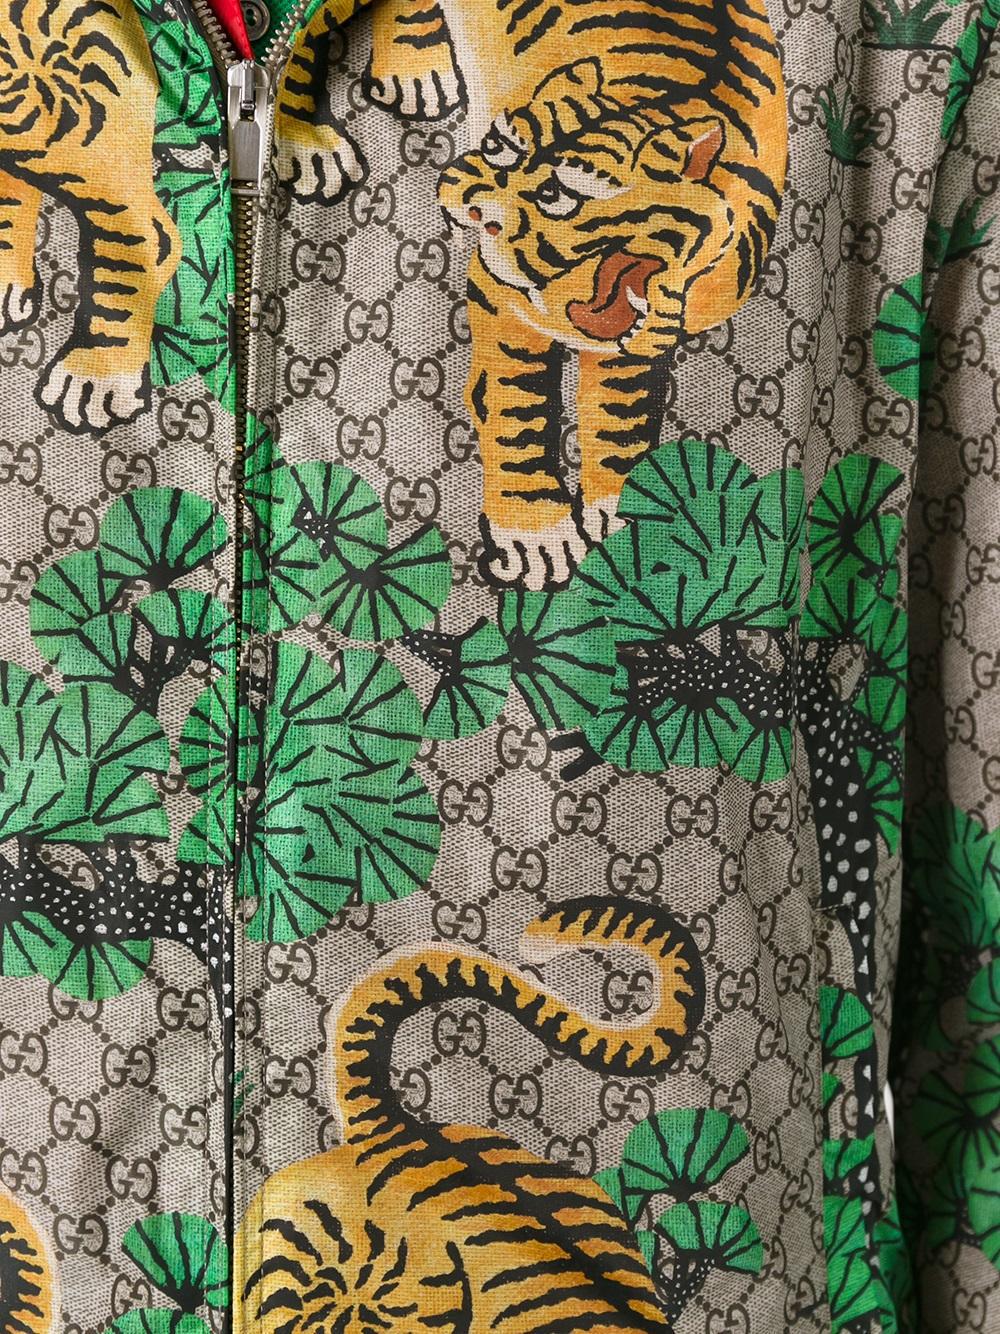 gucci men's bengal tiger jacket